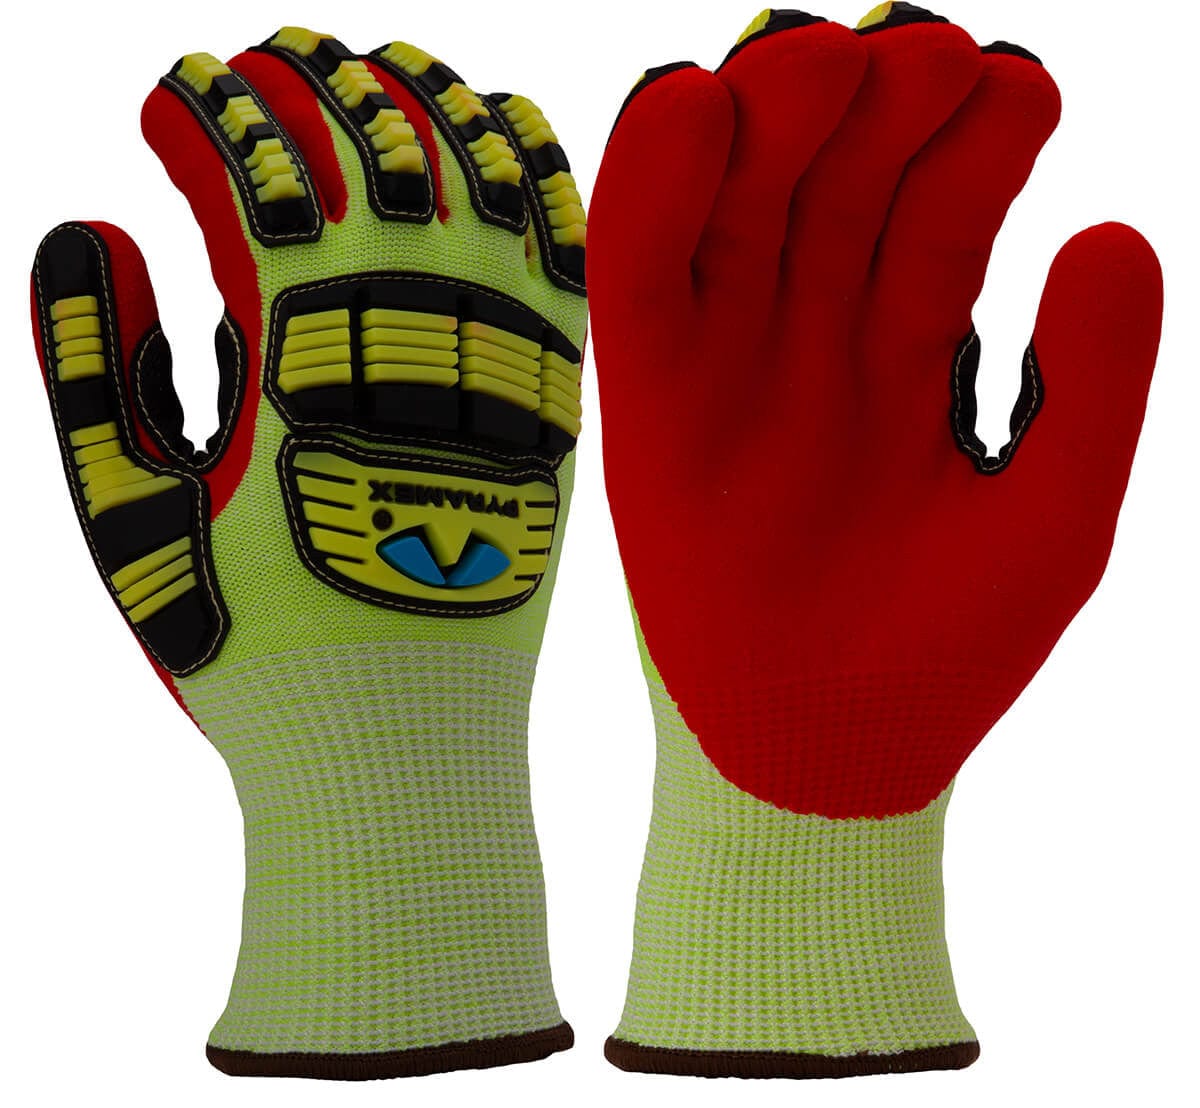 Pyramex GL612C Insulated Dipped Glove